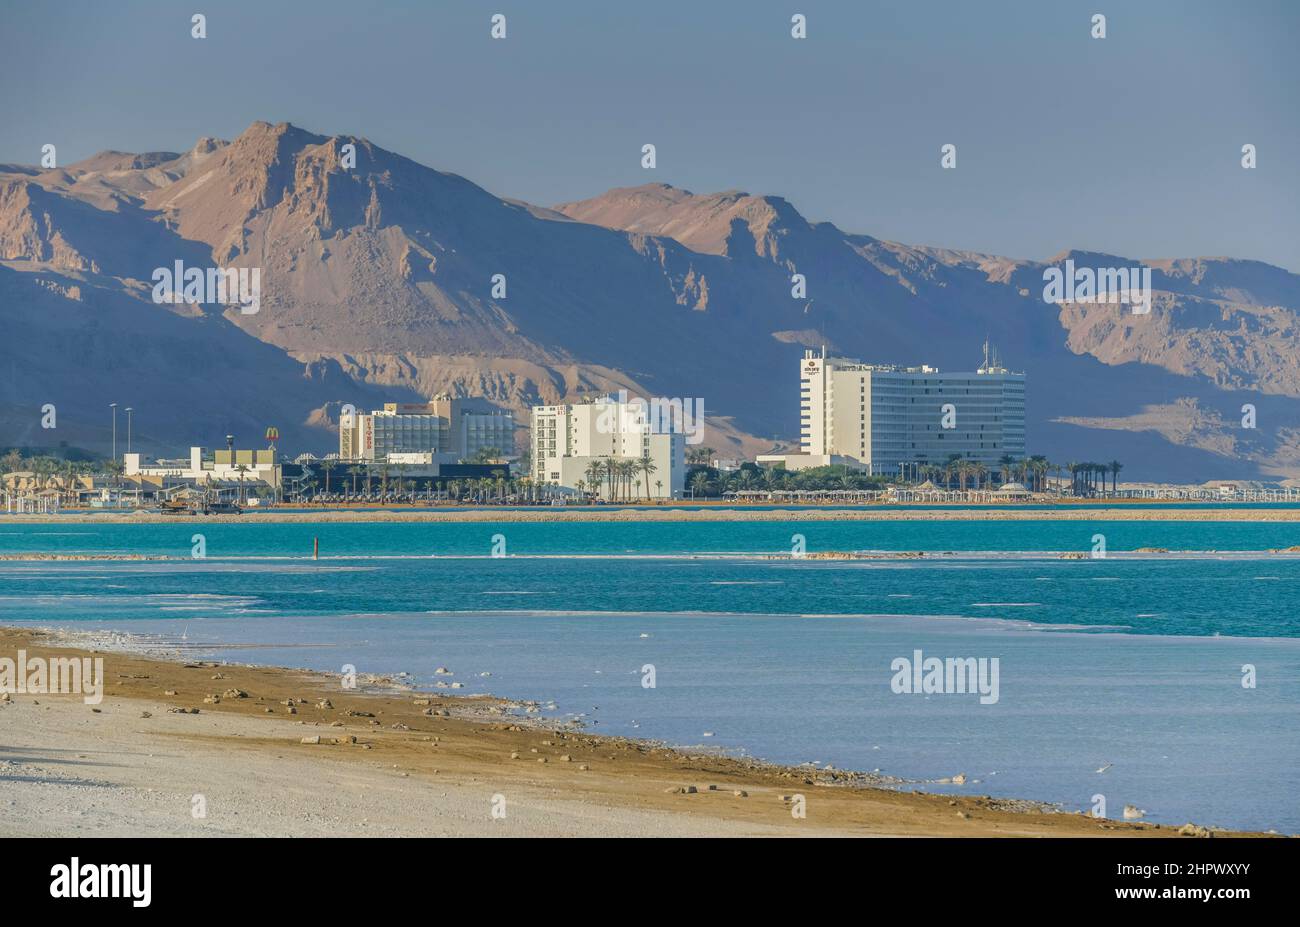 Southern Dead Sea, hotel facilities, En Bokek, Israel Stock Photo